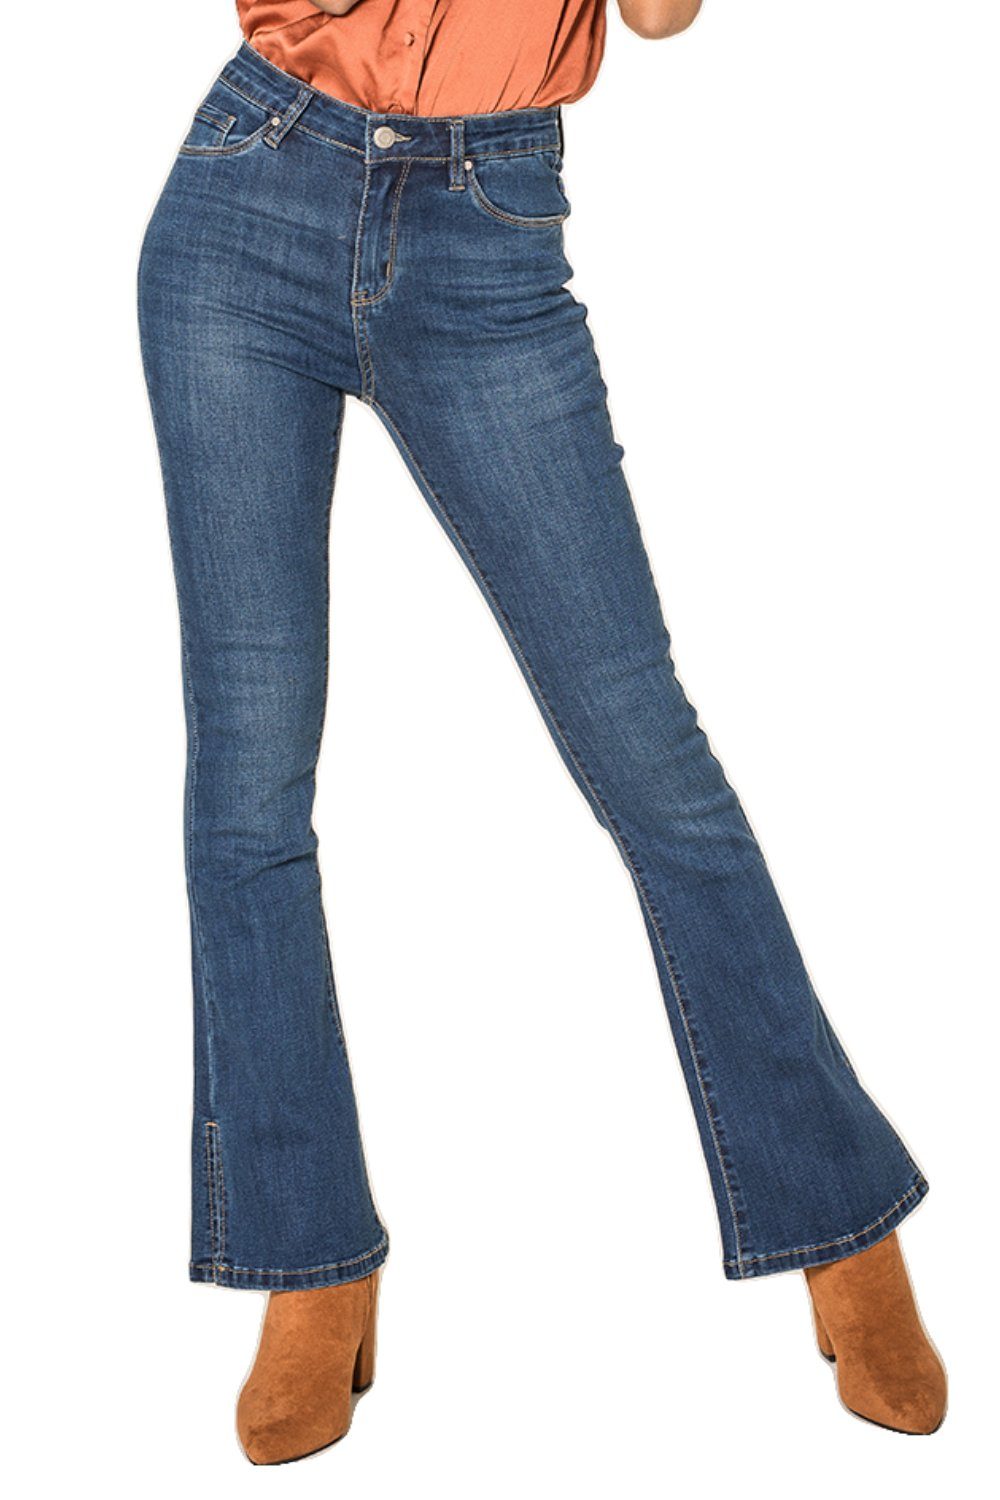 Nina Carter High-waist-Jeans »Damen Denim Schlag Jeans stretch Flared SPLIT  JEANS Hose« (slim fit, 1-tlg., Reißverschluss) 3423 in Blau online kaufen |  OTTO